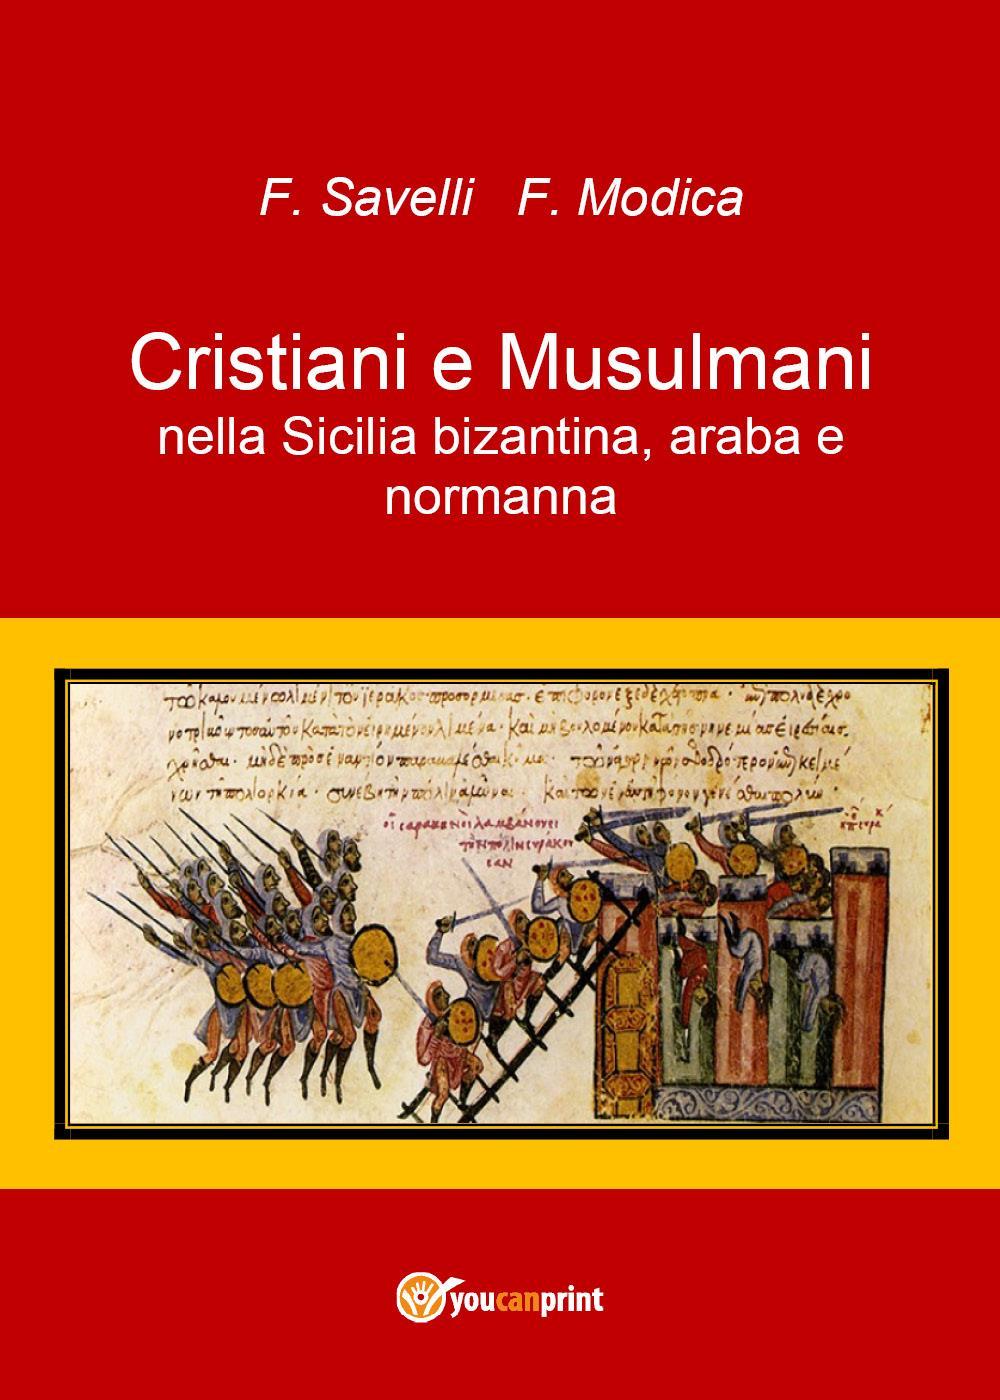 Cristiani e Musulmani nella Sicilia bizantina, araba e normanna